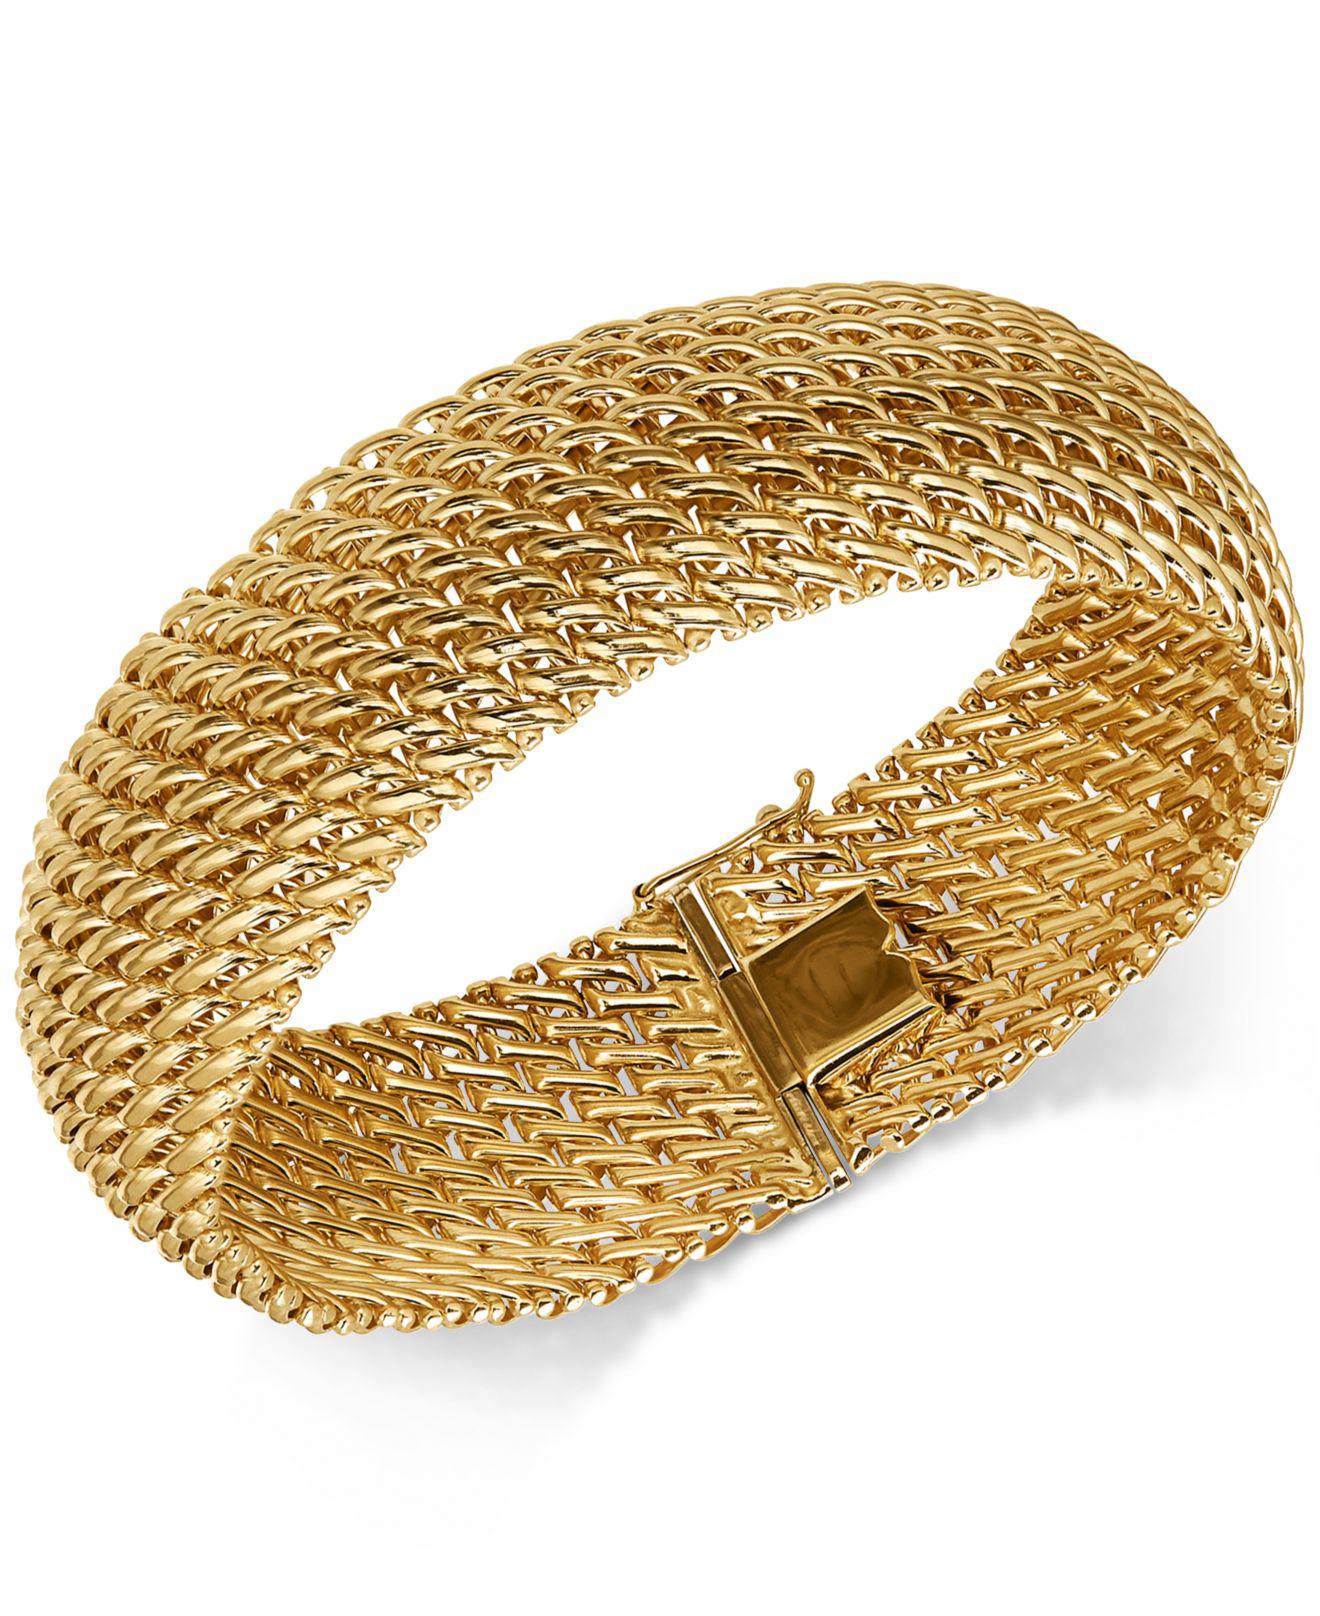 Macy's Wide Riso Link Bracelet In 14k Gold in Metallic | Lyst